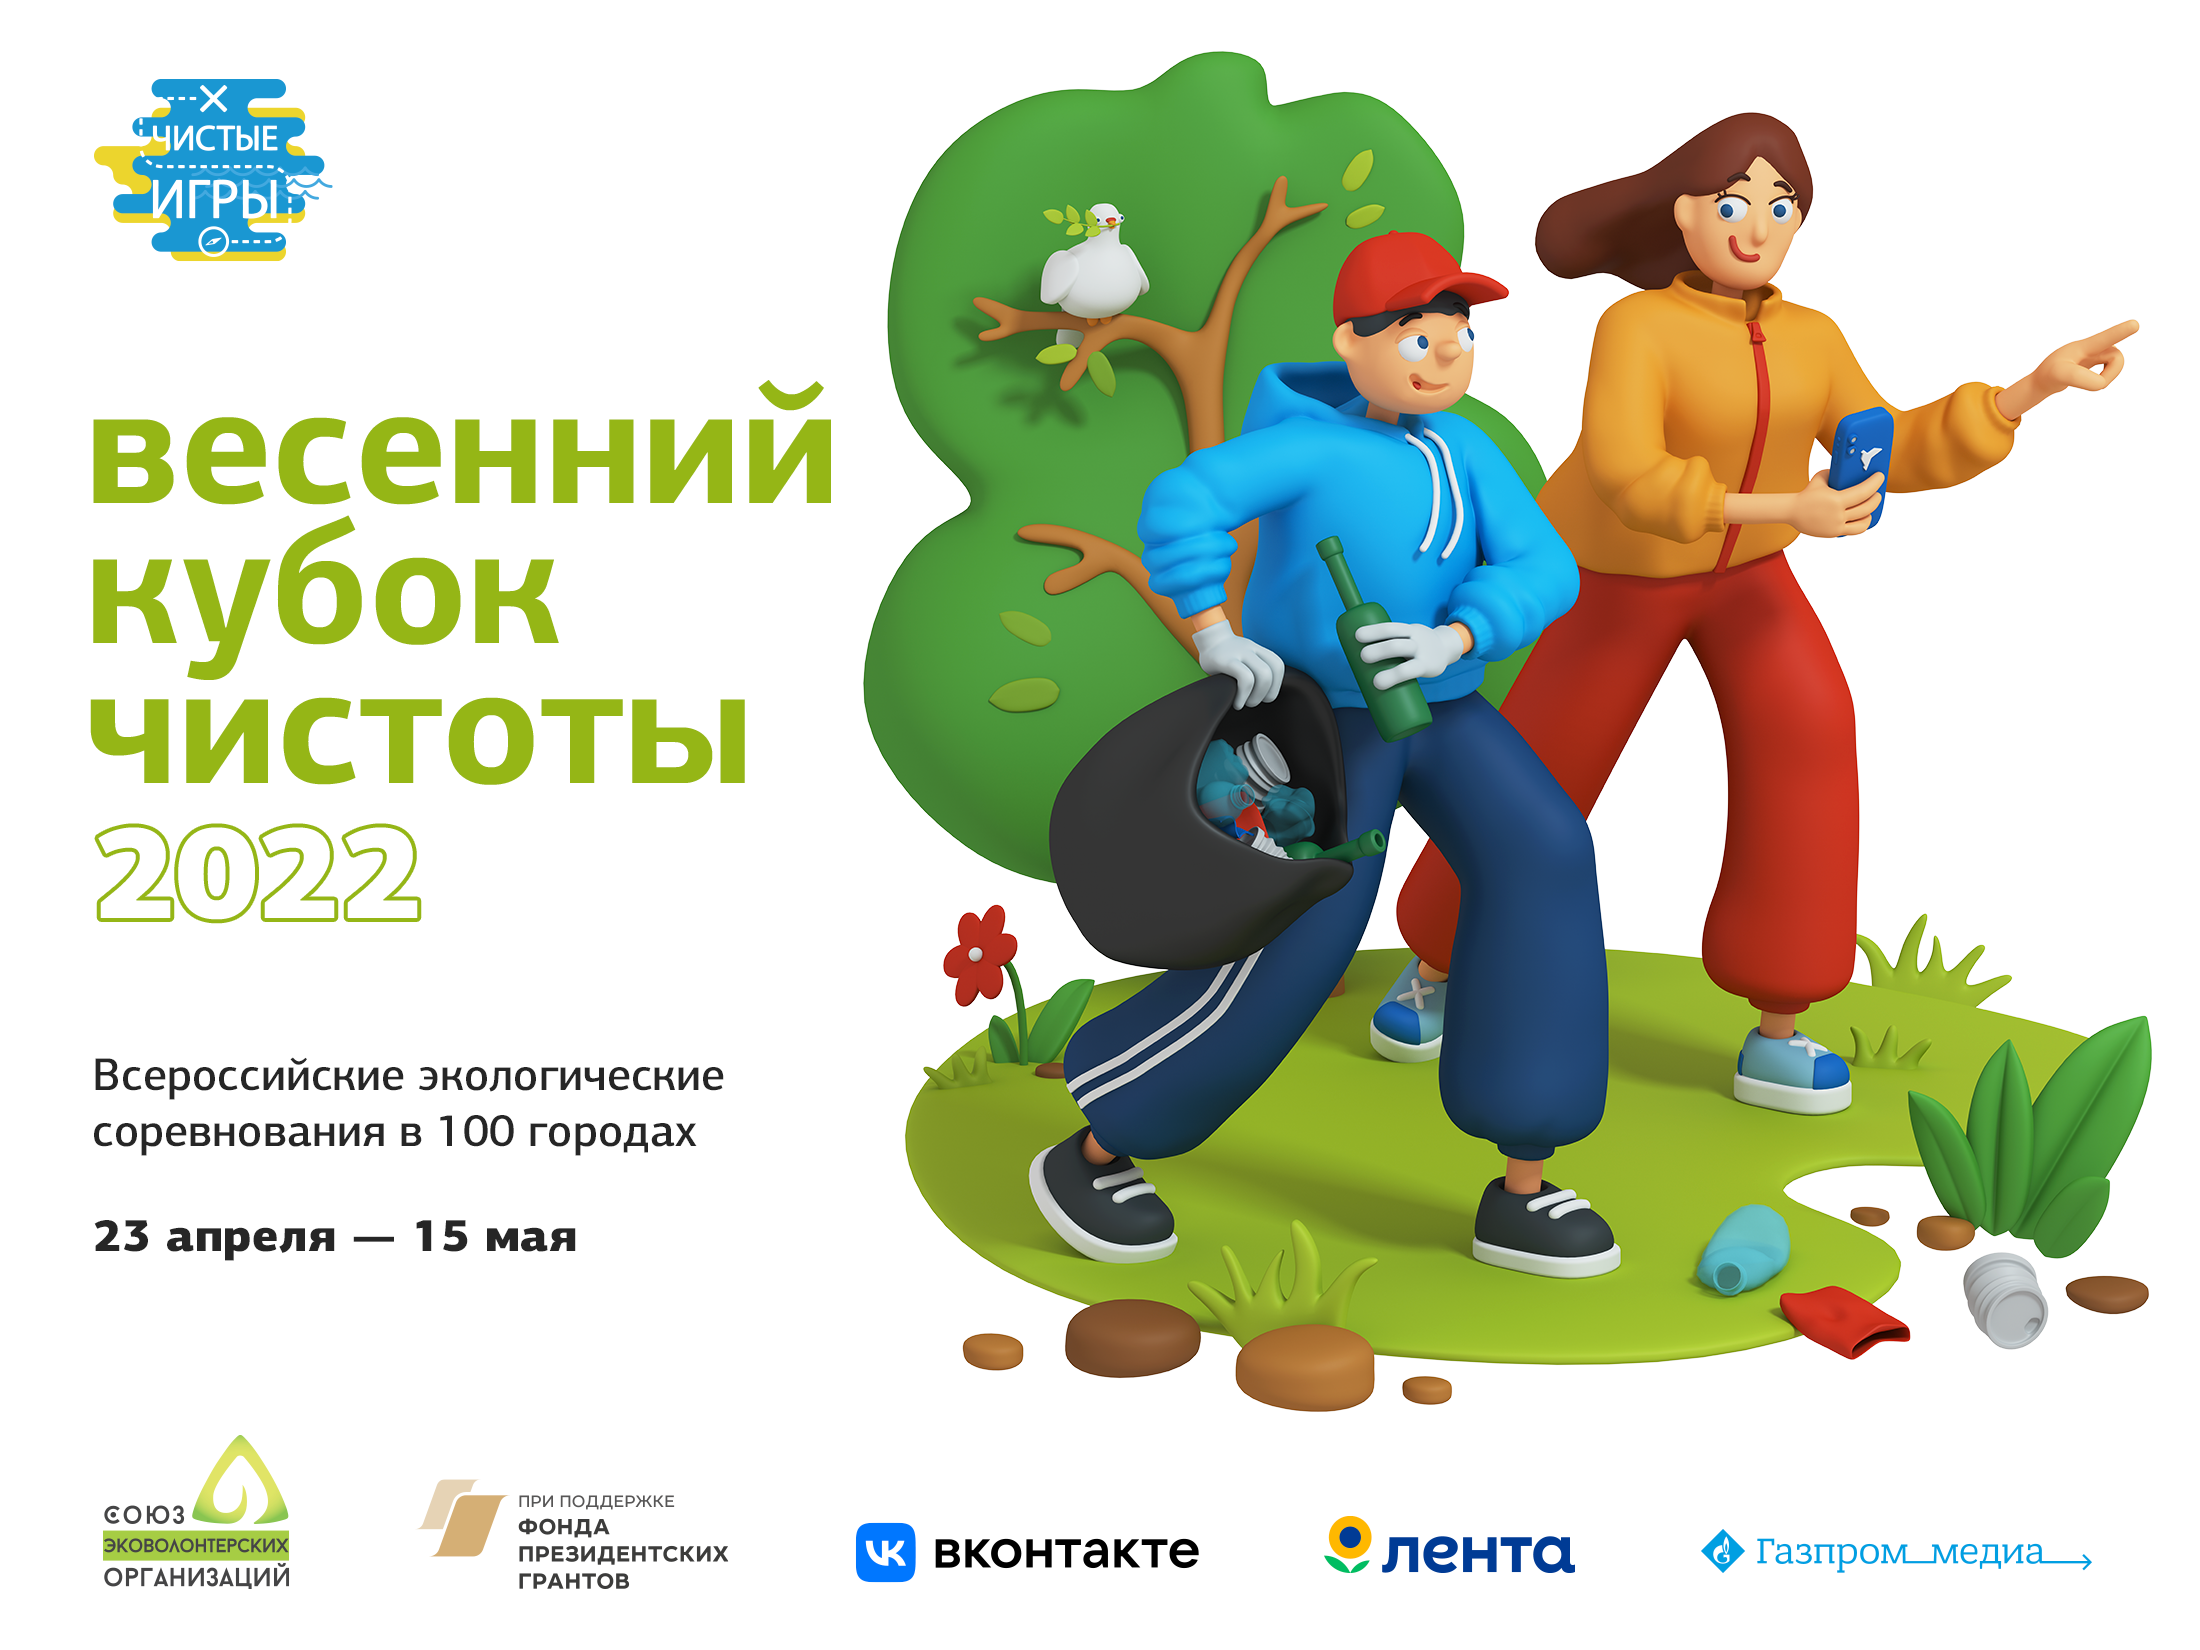 Весенний Кубок Чистоты 2022 объединит неравнодушных жителей более 65 городов России, чтобы вместе позаботиться о нашей природе!